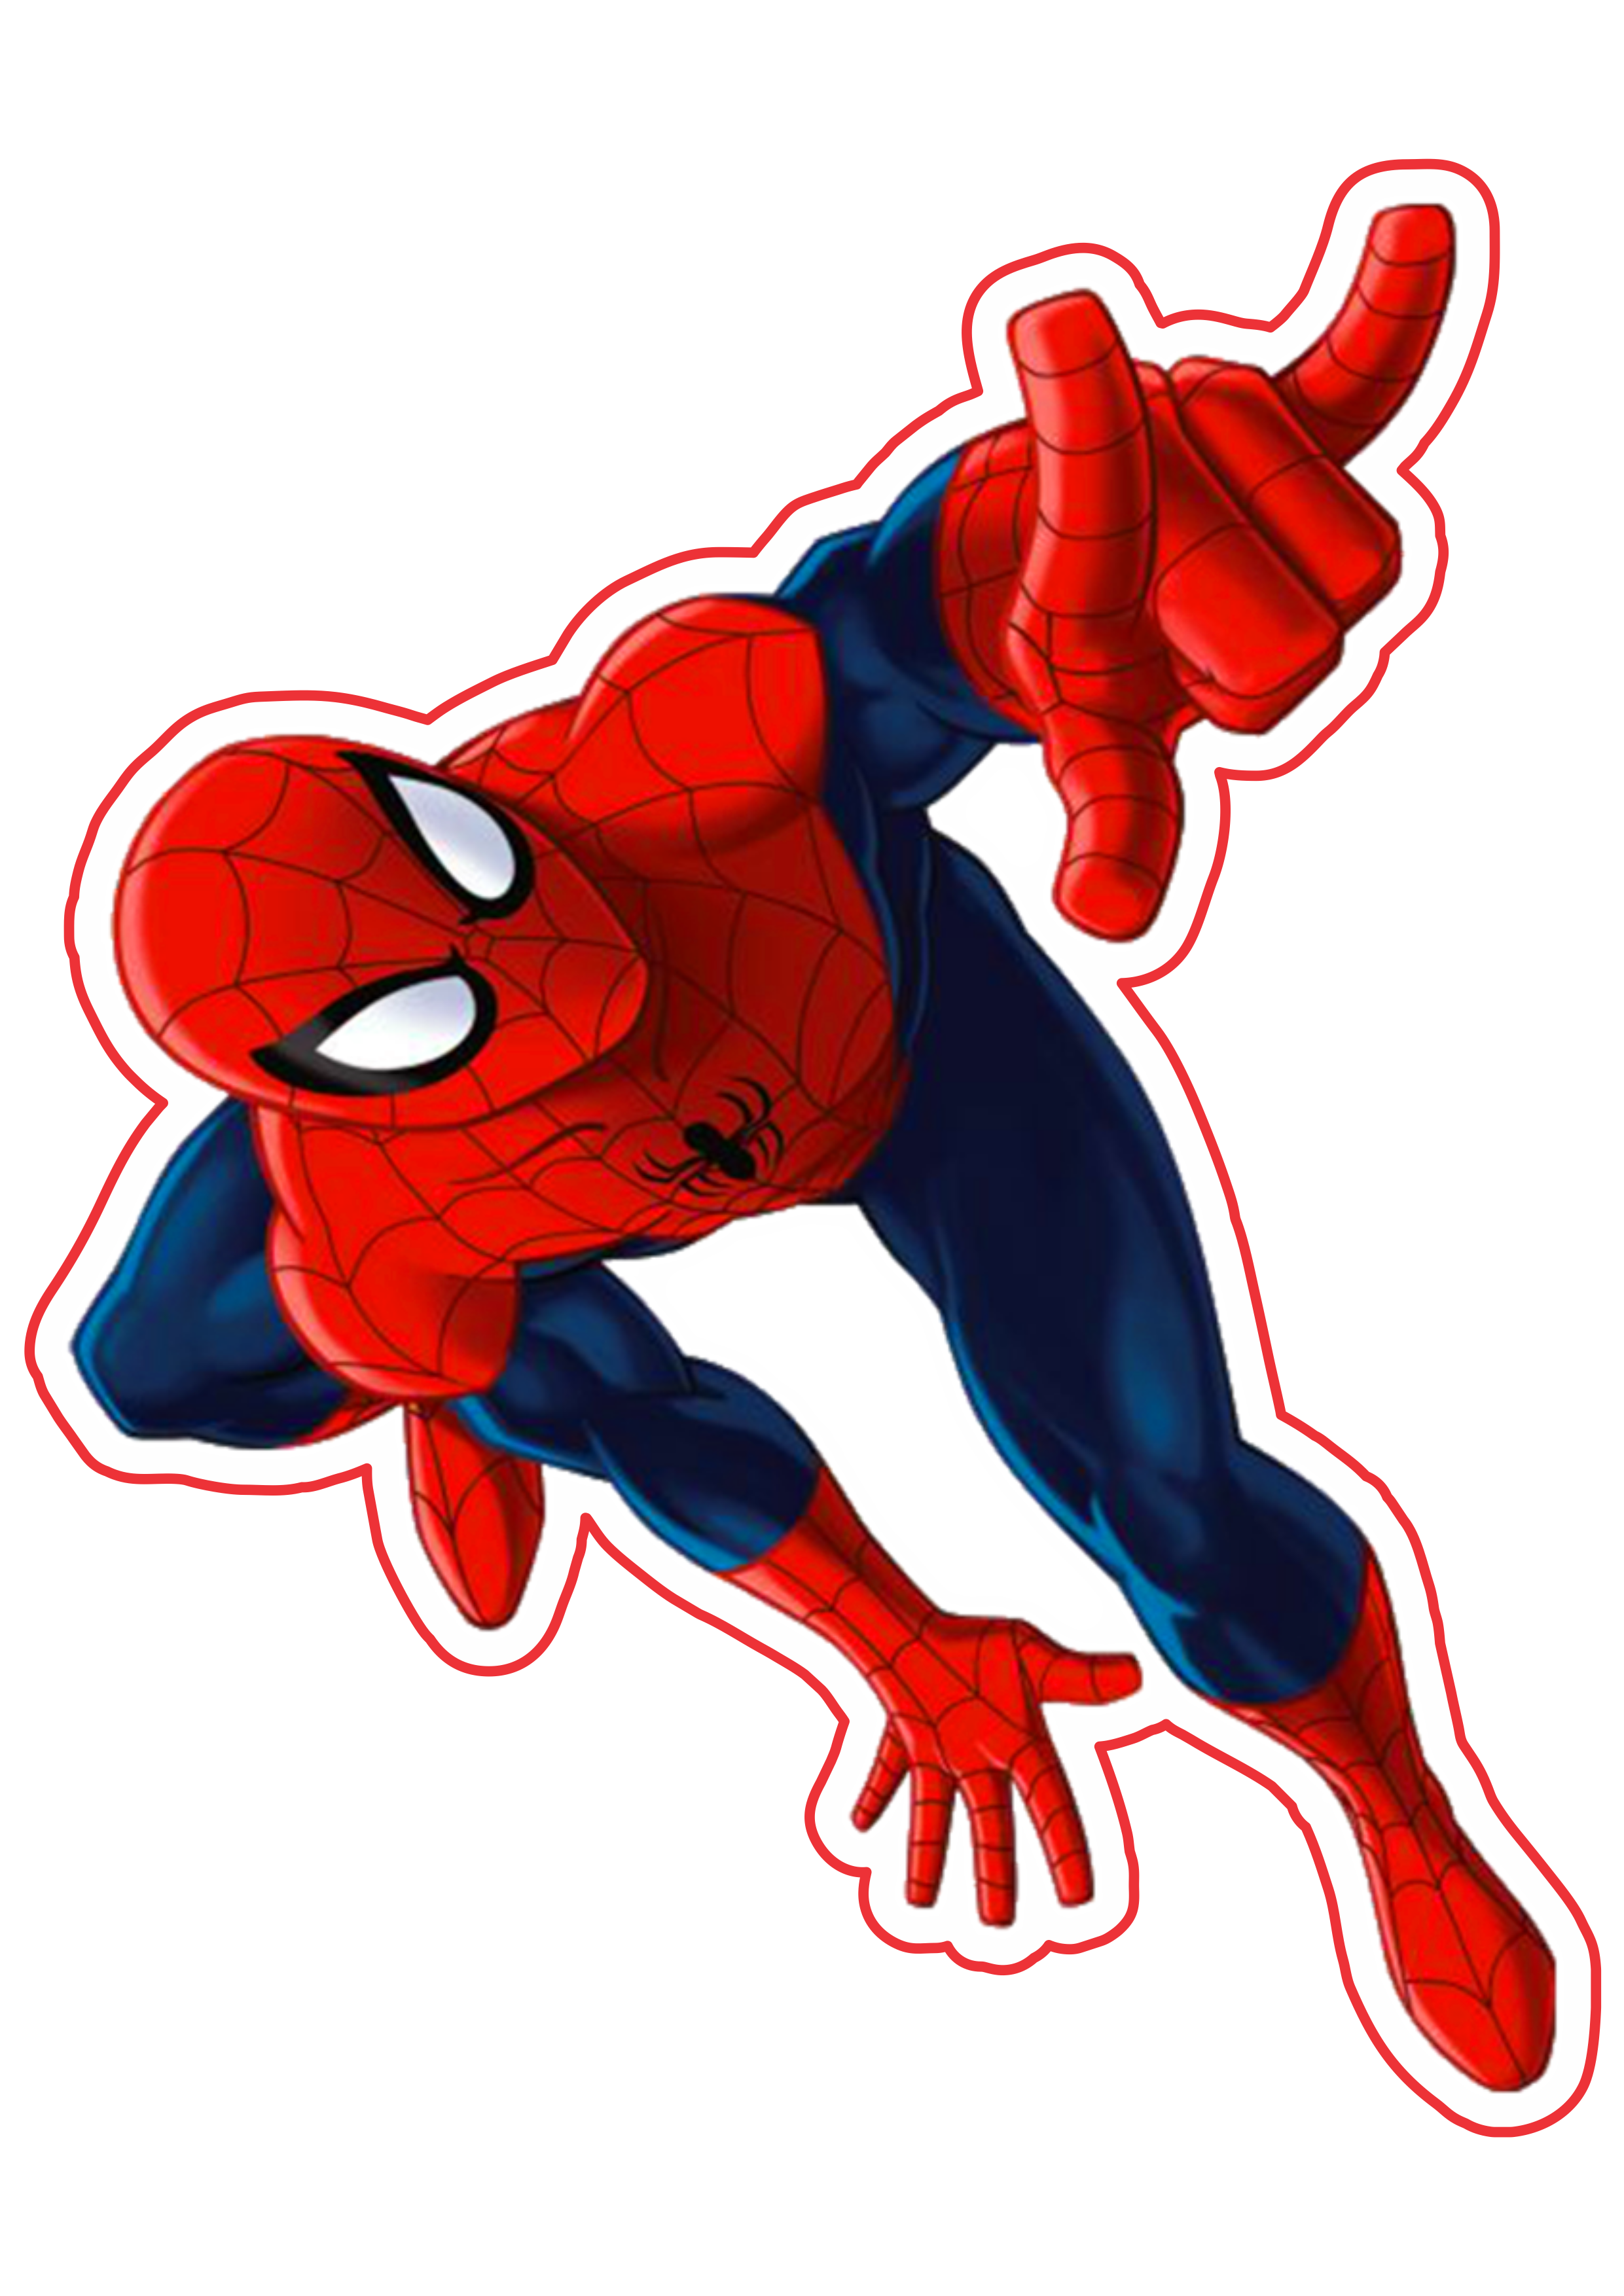 Homem aranha marvel comics imagem alta qualidade fundo transparente png